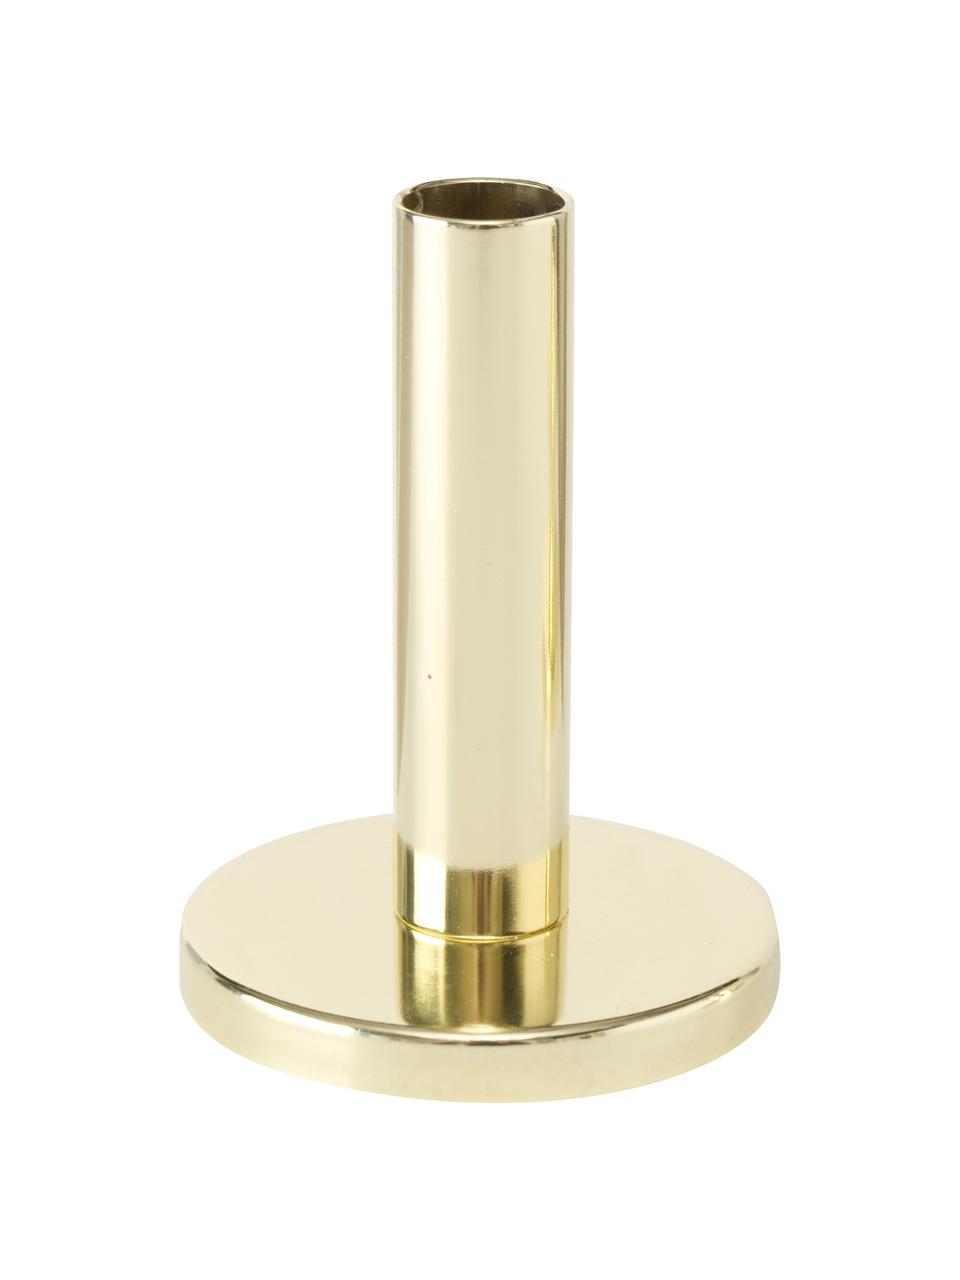 Kerzenhalter-Set Malko, 3-tlg., Metall, beschichtet, Goldfarben, Set mit verschiedenen Grössen